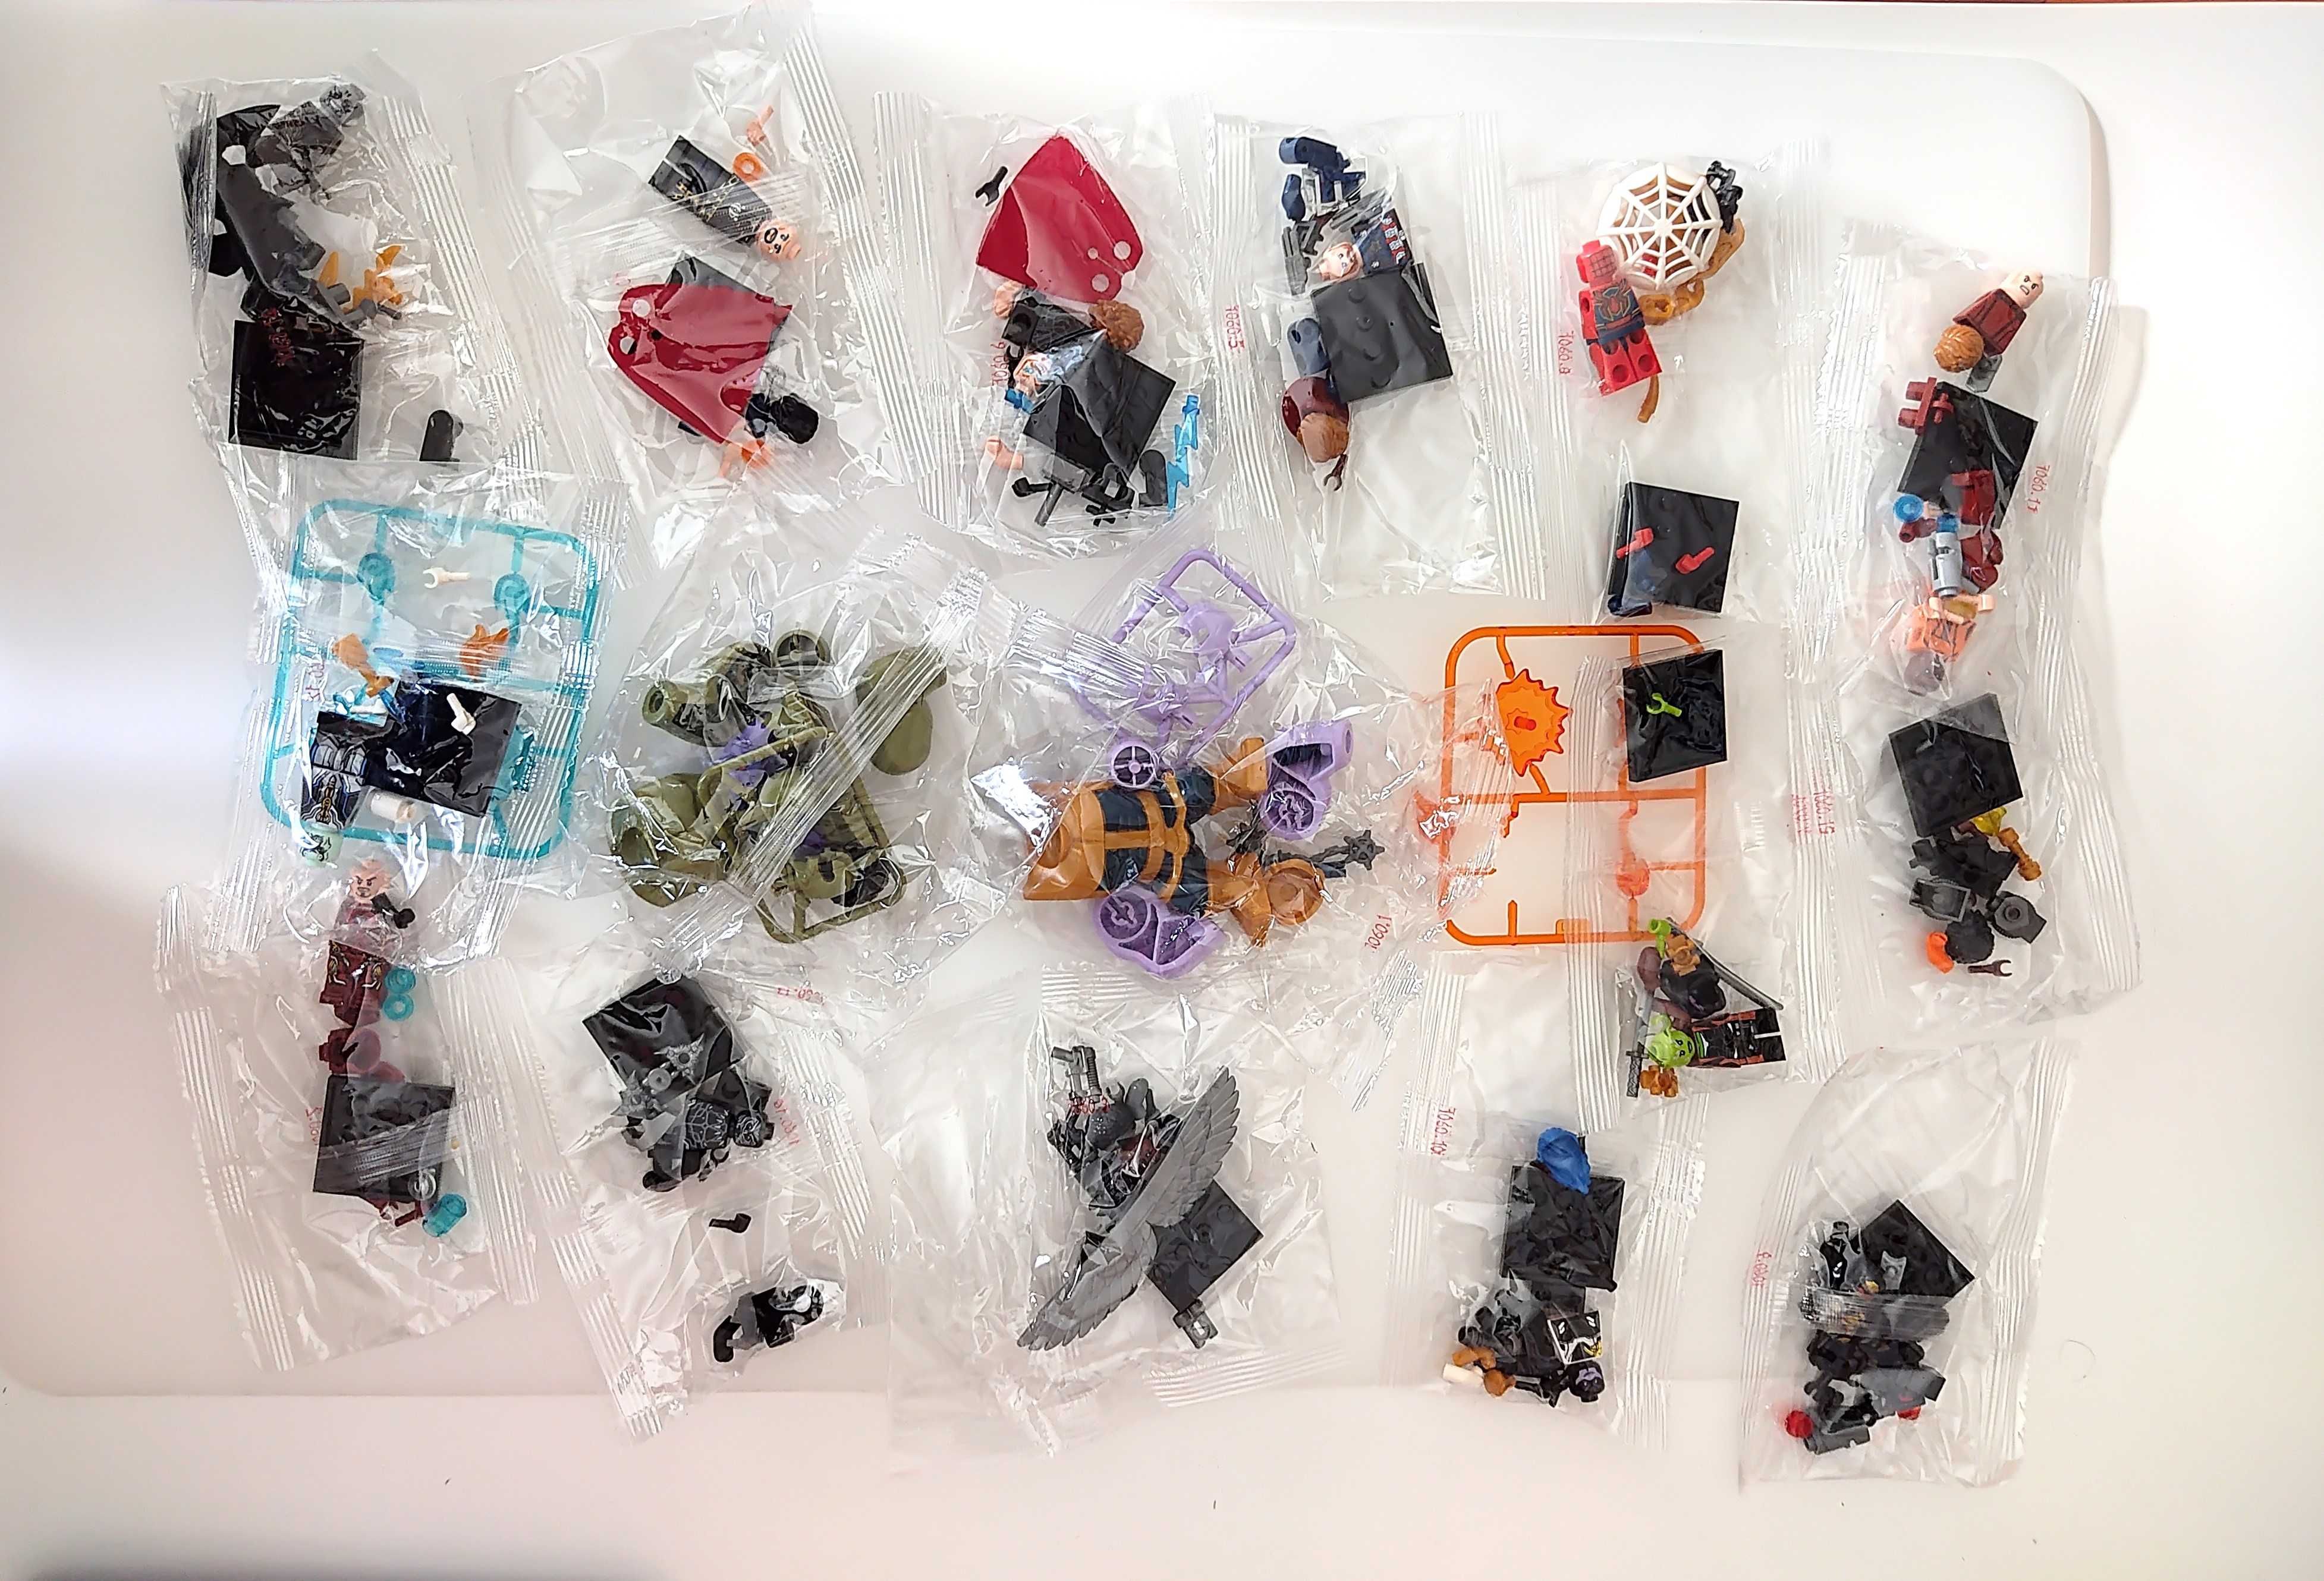 Bonecos minifiguras Super Heróis nº119 (compatíveis com Lego)